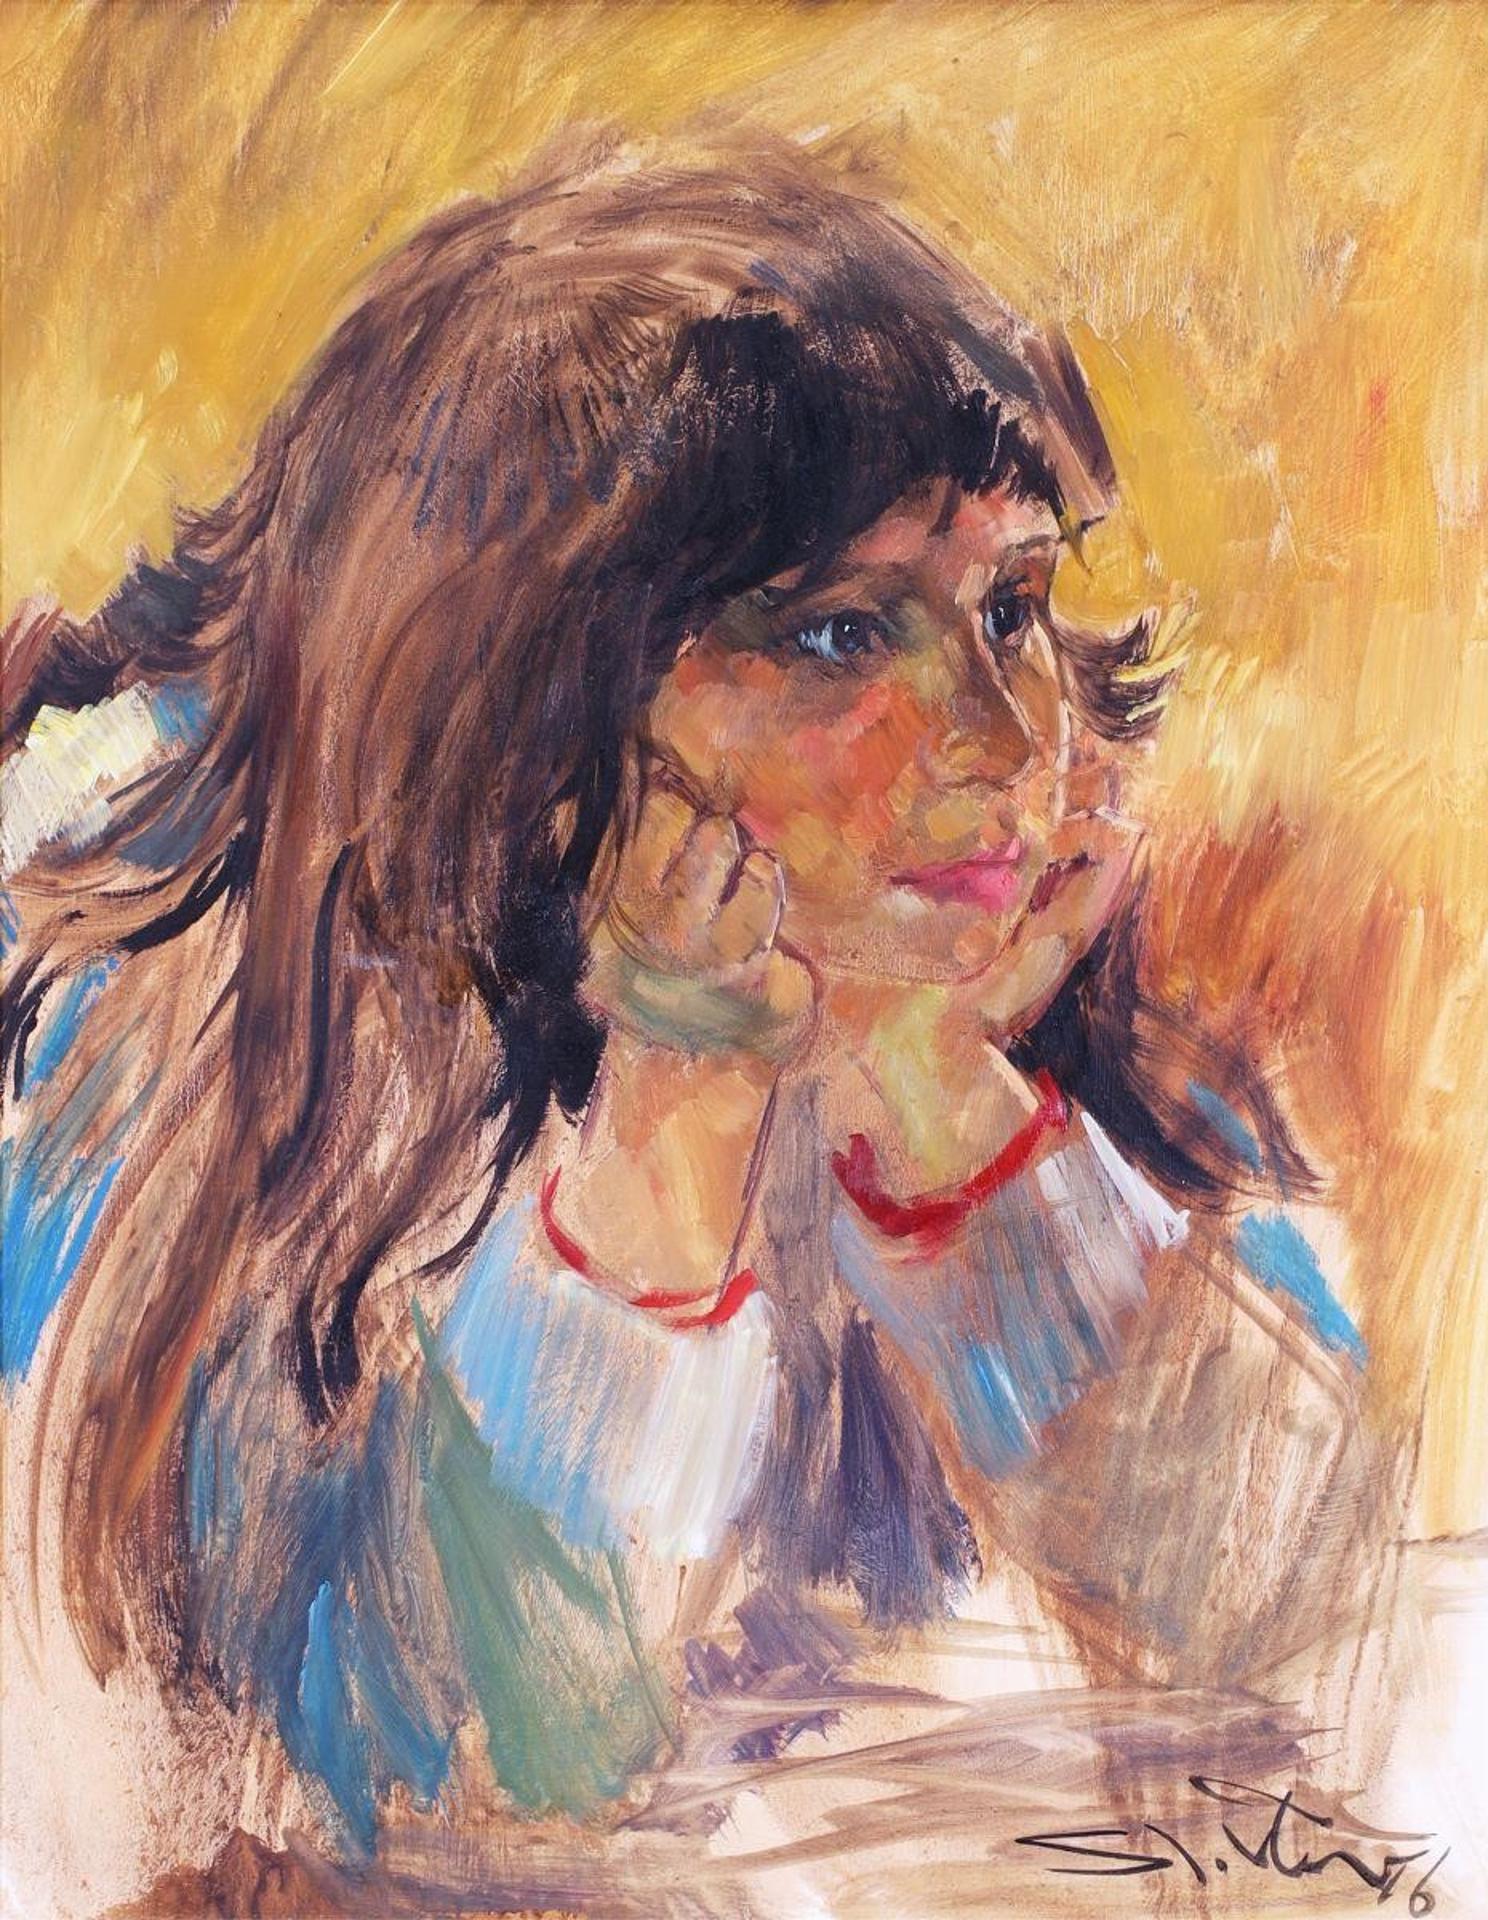 Arthur Shilling (1941-1986) - Pensive Girl; 1976